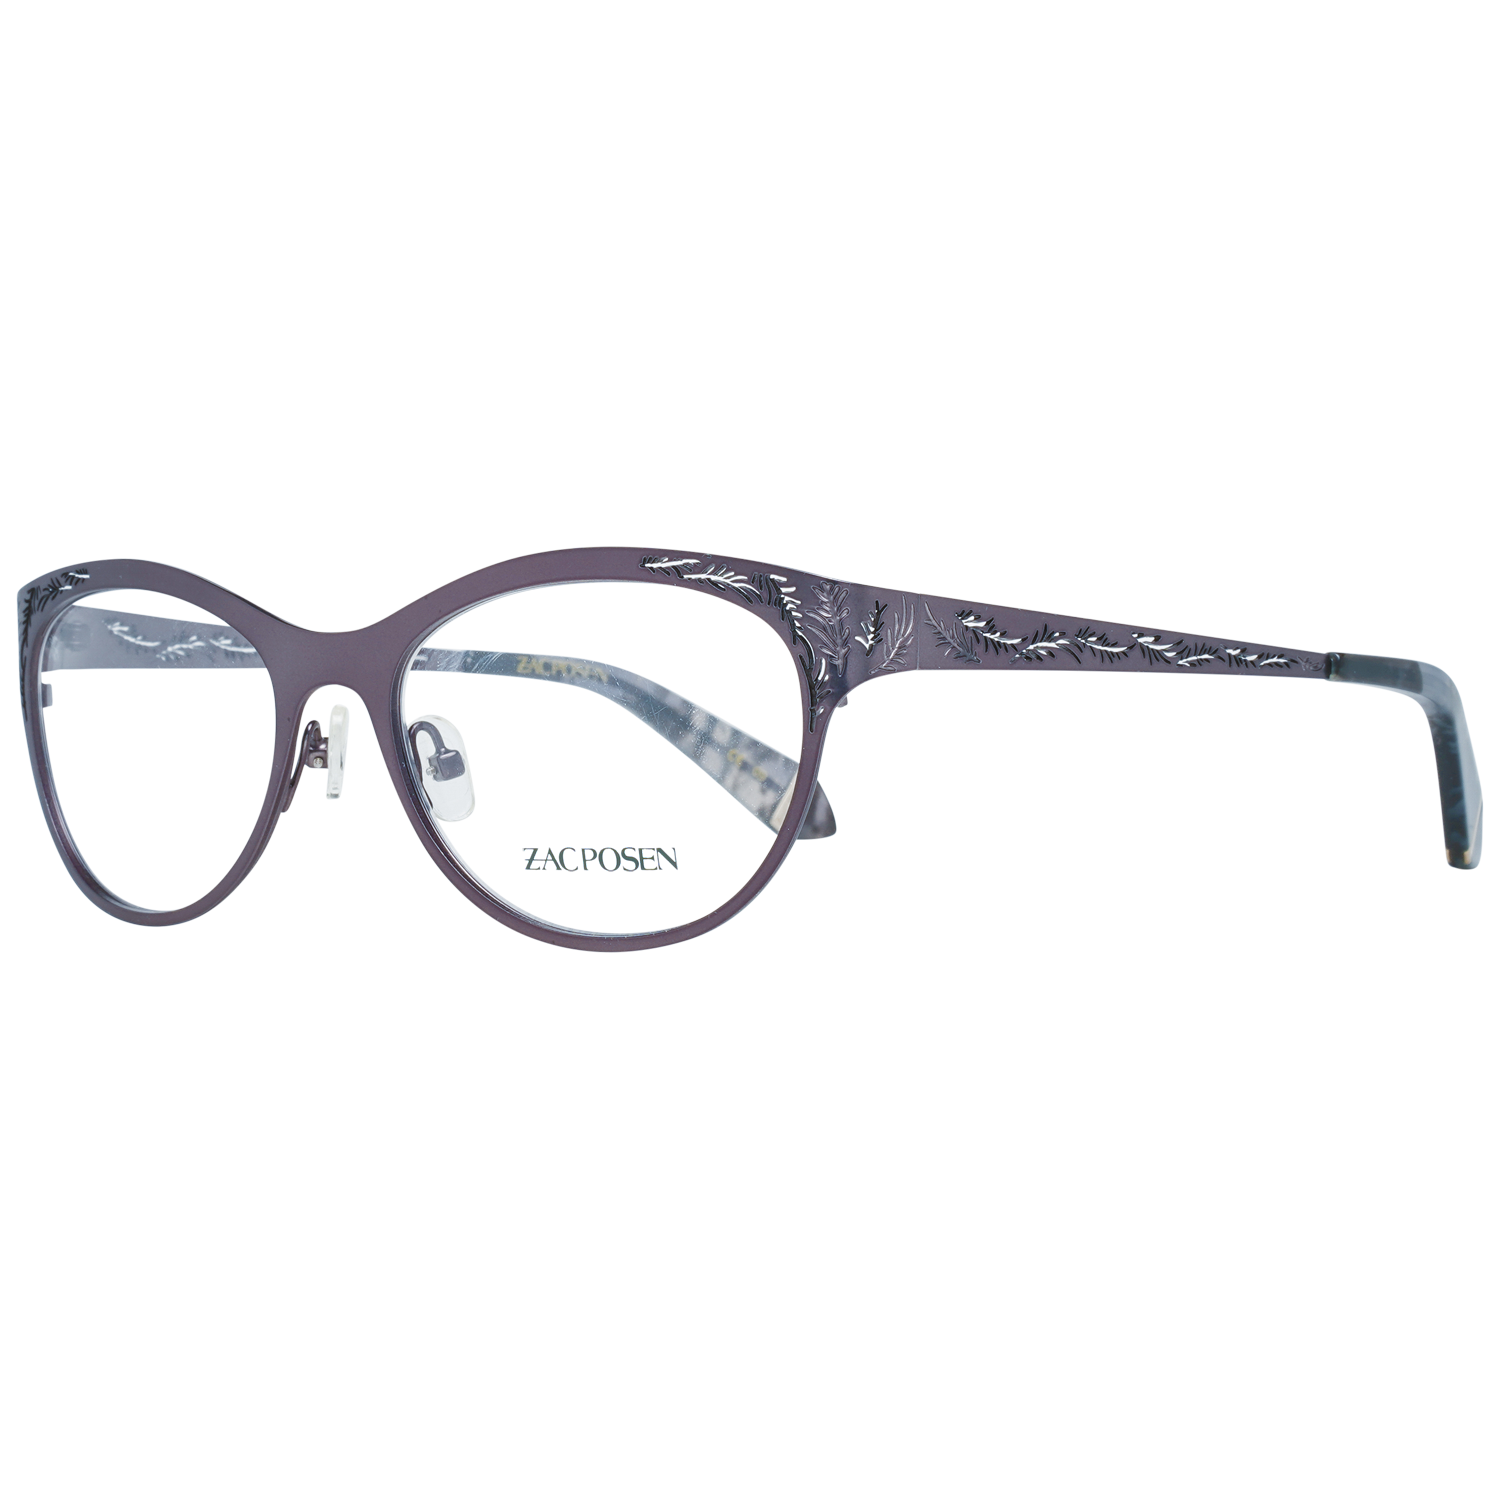 Zac Posen Frames Zac Posen Glasses Frames ZGAY GM 52 Gayle Eyeglasses Eyewear UK USA Australia 